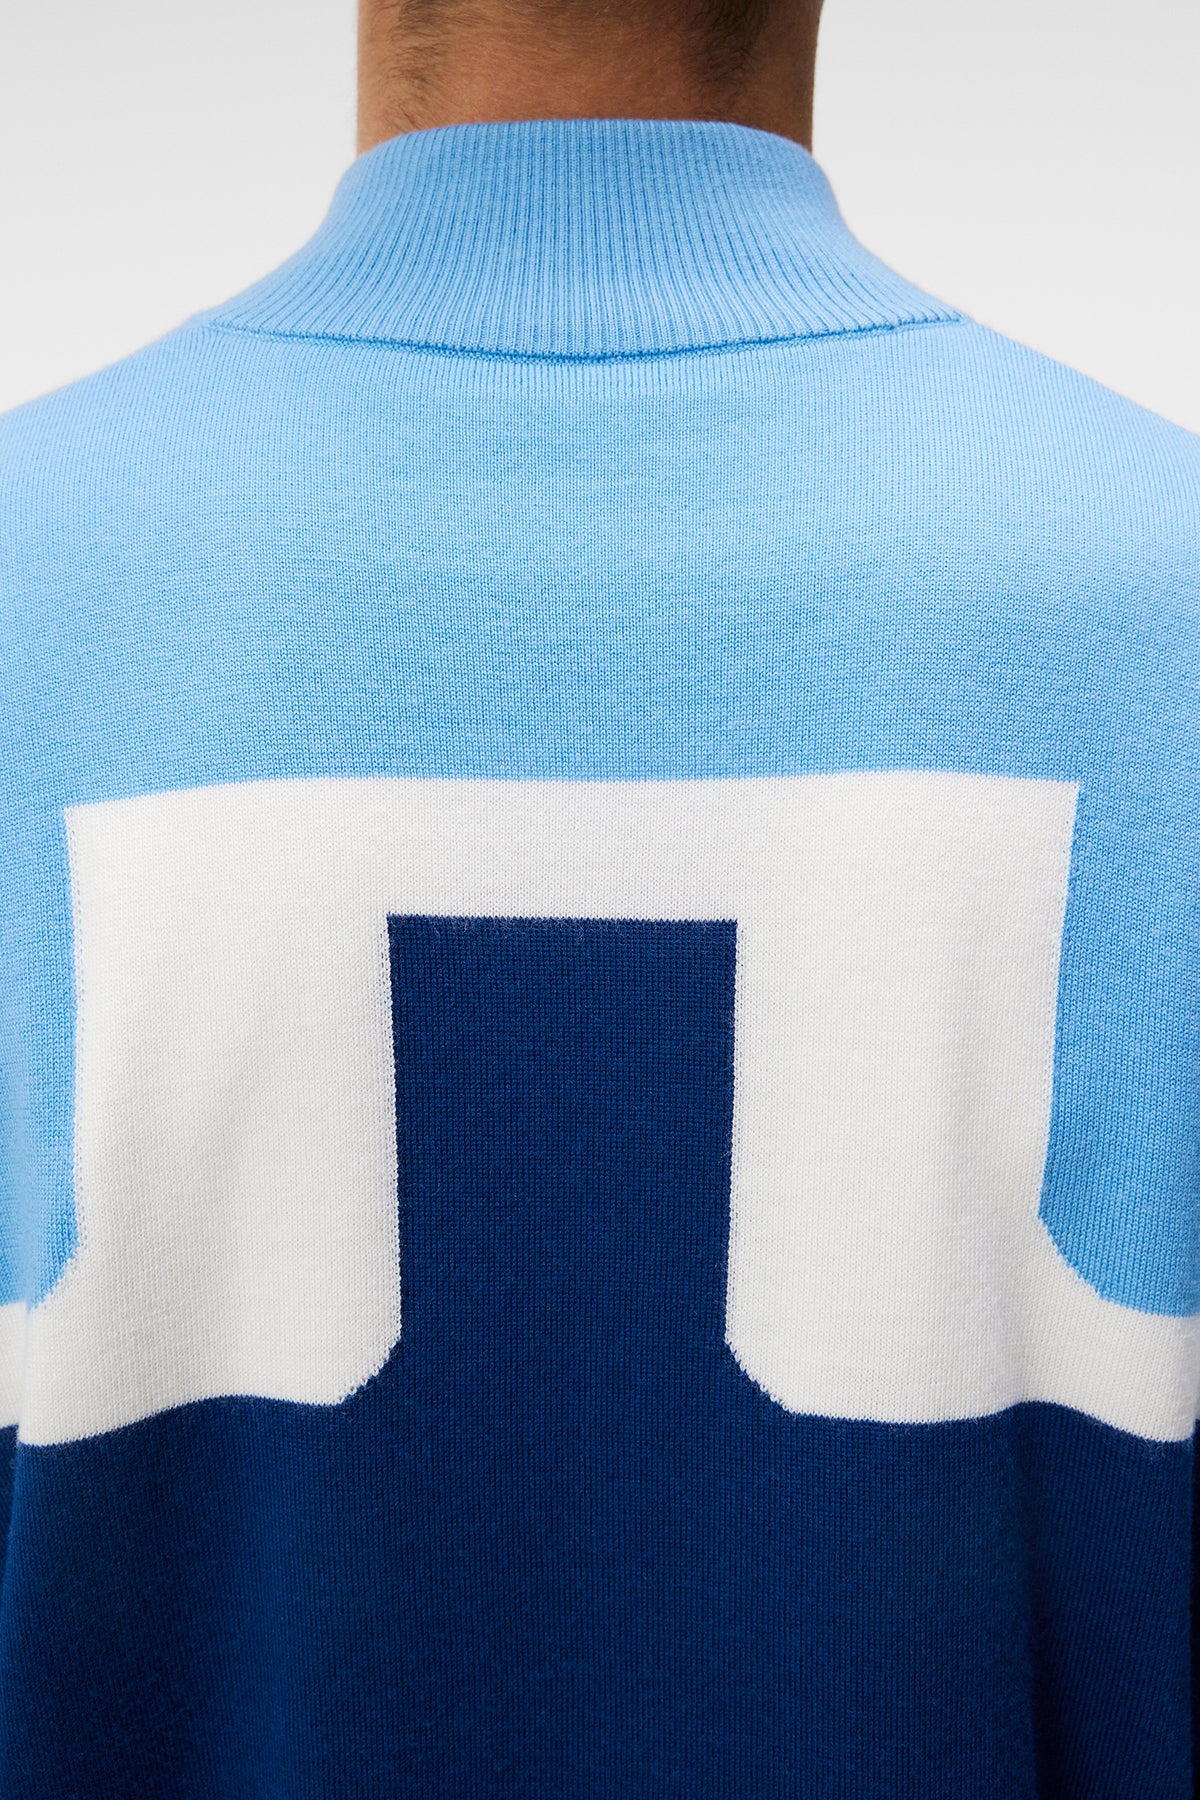 Jeff Windbreaker Sweater / Estate Blue